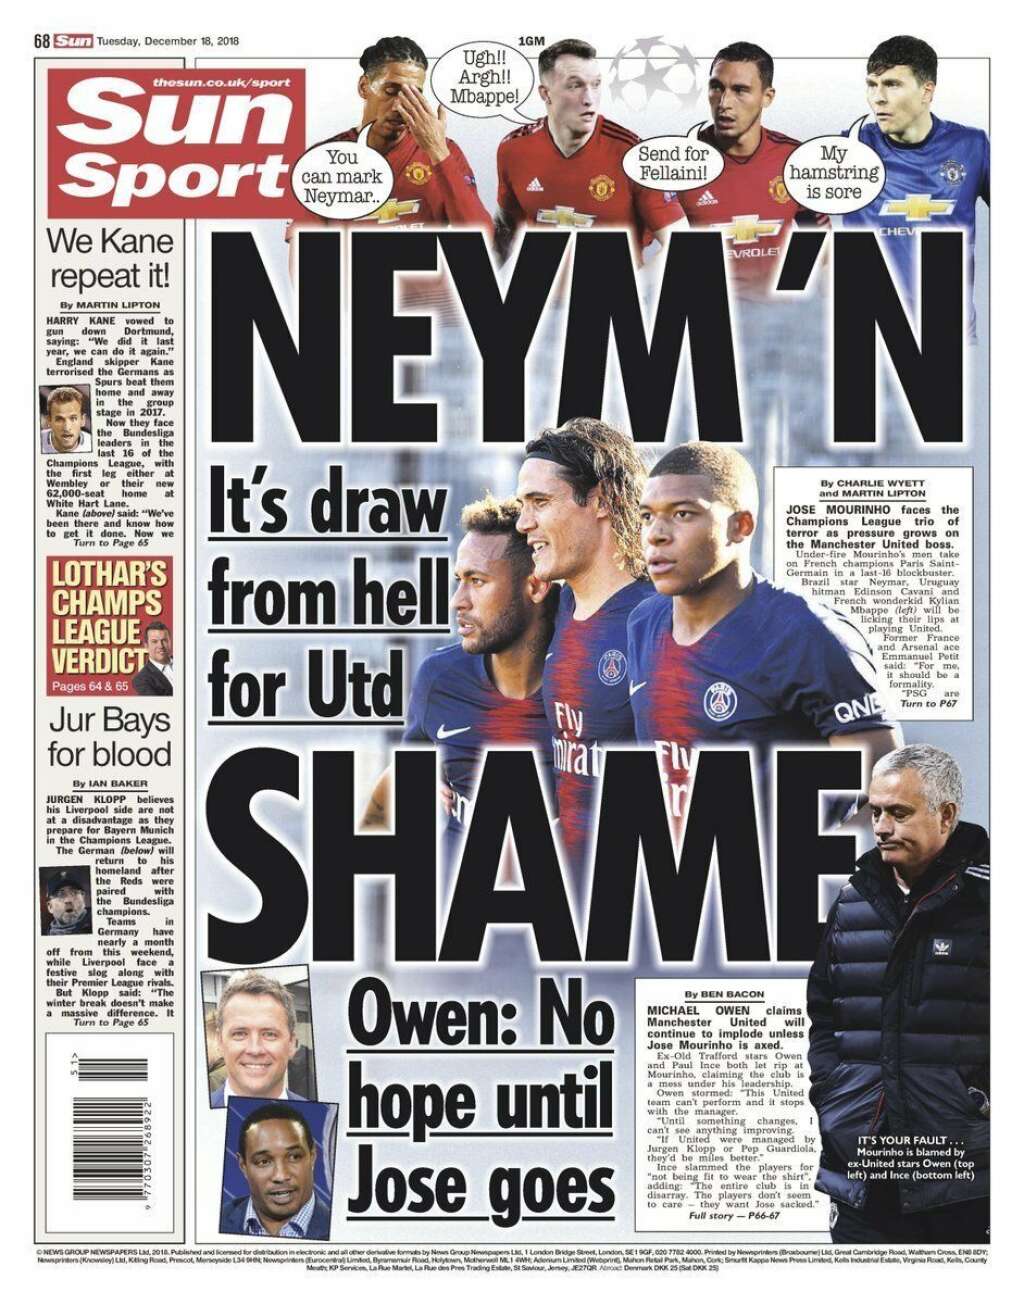 18 décembre - "The Sun" - <p>"C'est un tirage de l'Enfer pour United", titrait le cahier sport du tabloïd <em>The Sun </em>au lendemain du tirage au sort.</p>  <p>"Aucun espoir tant que José (Mourinho) n'est pas parti", confirmait à ce moment-là l'ancien Ballon d'Or Michael Owen.</p>  <p>Depuis, l'entraîneur portugais n'est plus là, et Manchester va bien mieux avec Ole Gunnar Solskjaer à sa tête. </p>